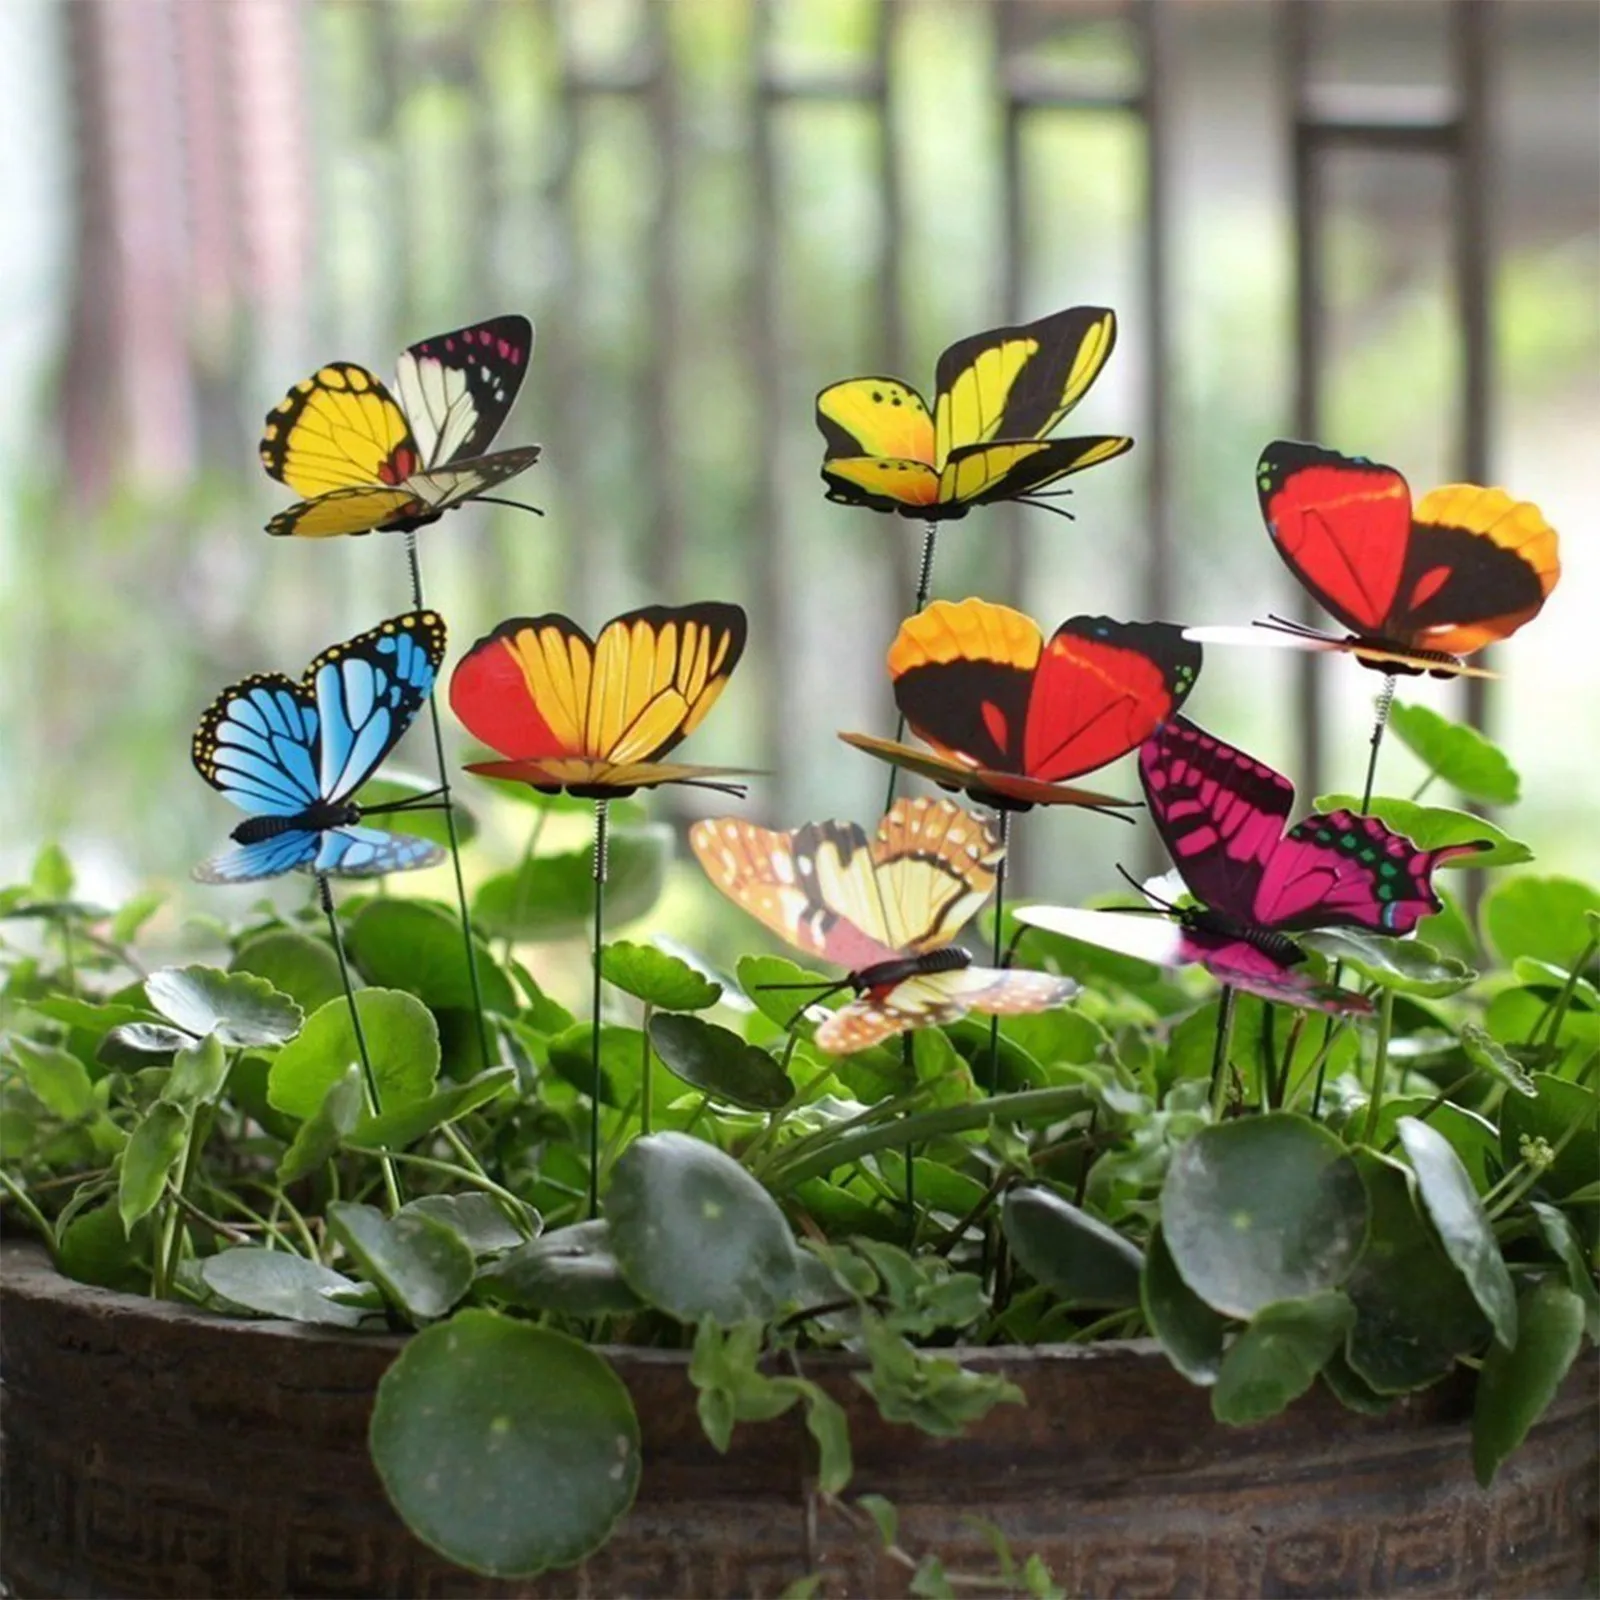 Butterfly Stakes Outdoor Yard Planter Flower Pot Bed Garden Decor Butterflies 